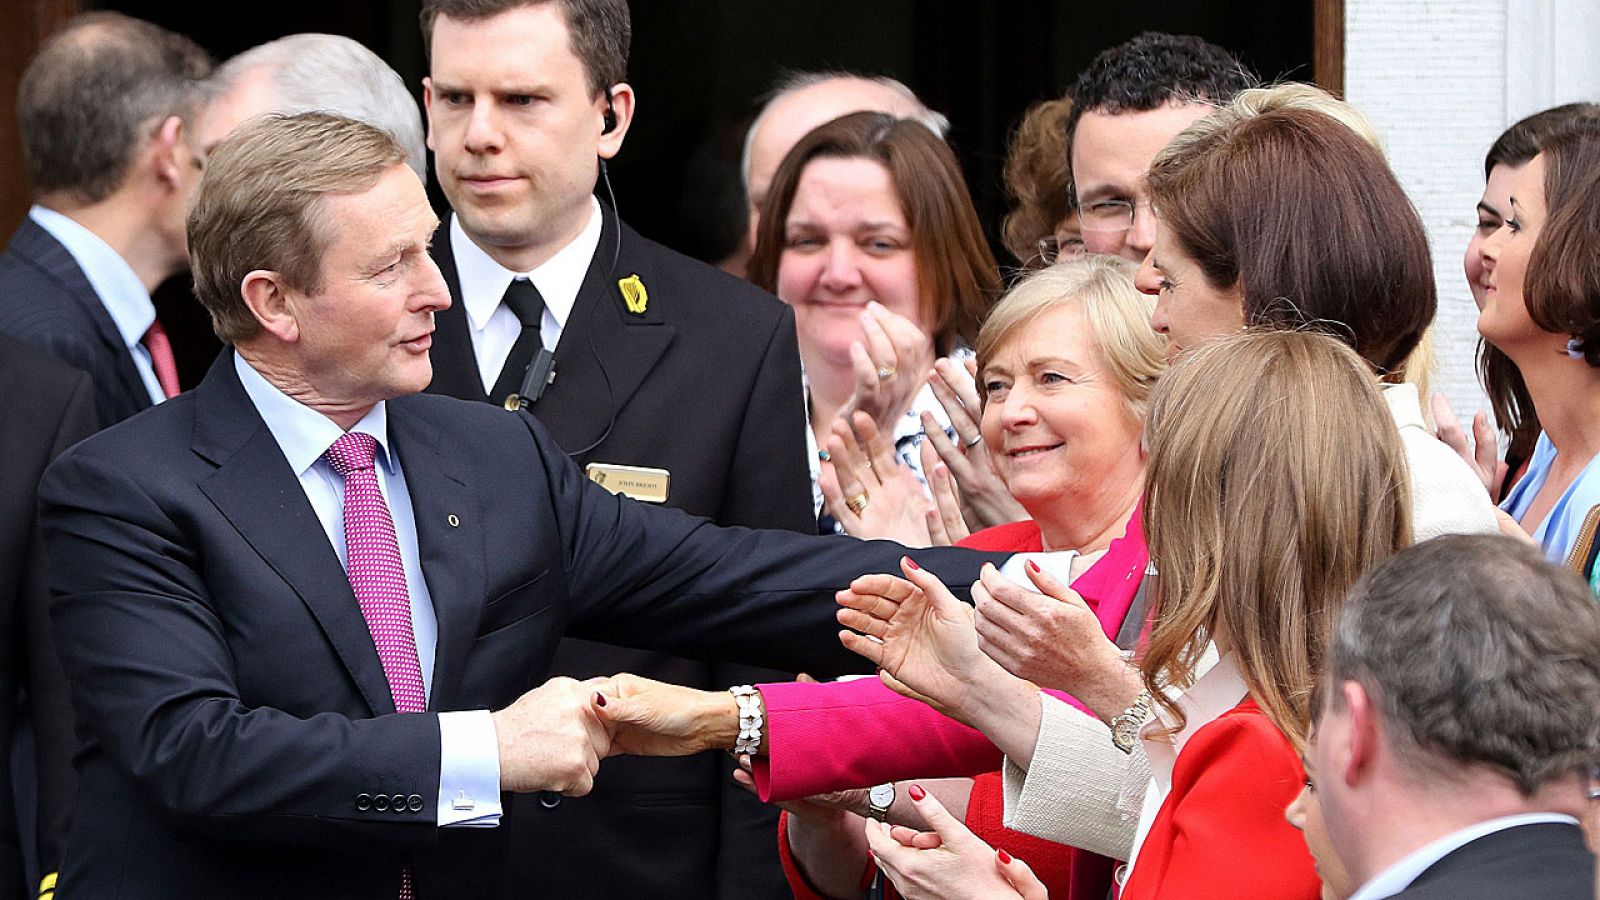 El líder del democristiano Fine Gael, Enda Kenny, es felicitado a la salida del Parlamento irlandés, donde ha sido reelegido como primer ministro.